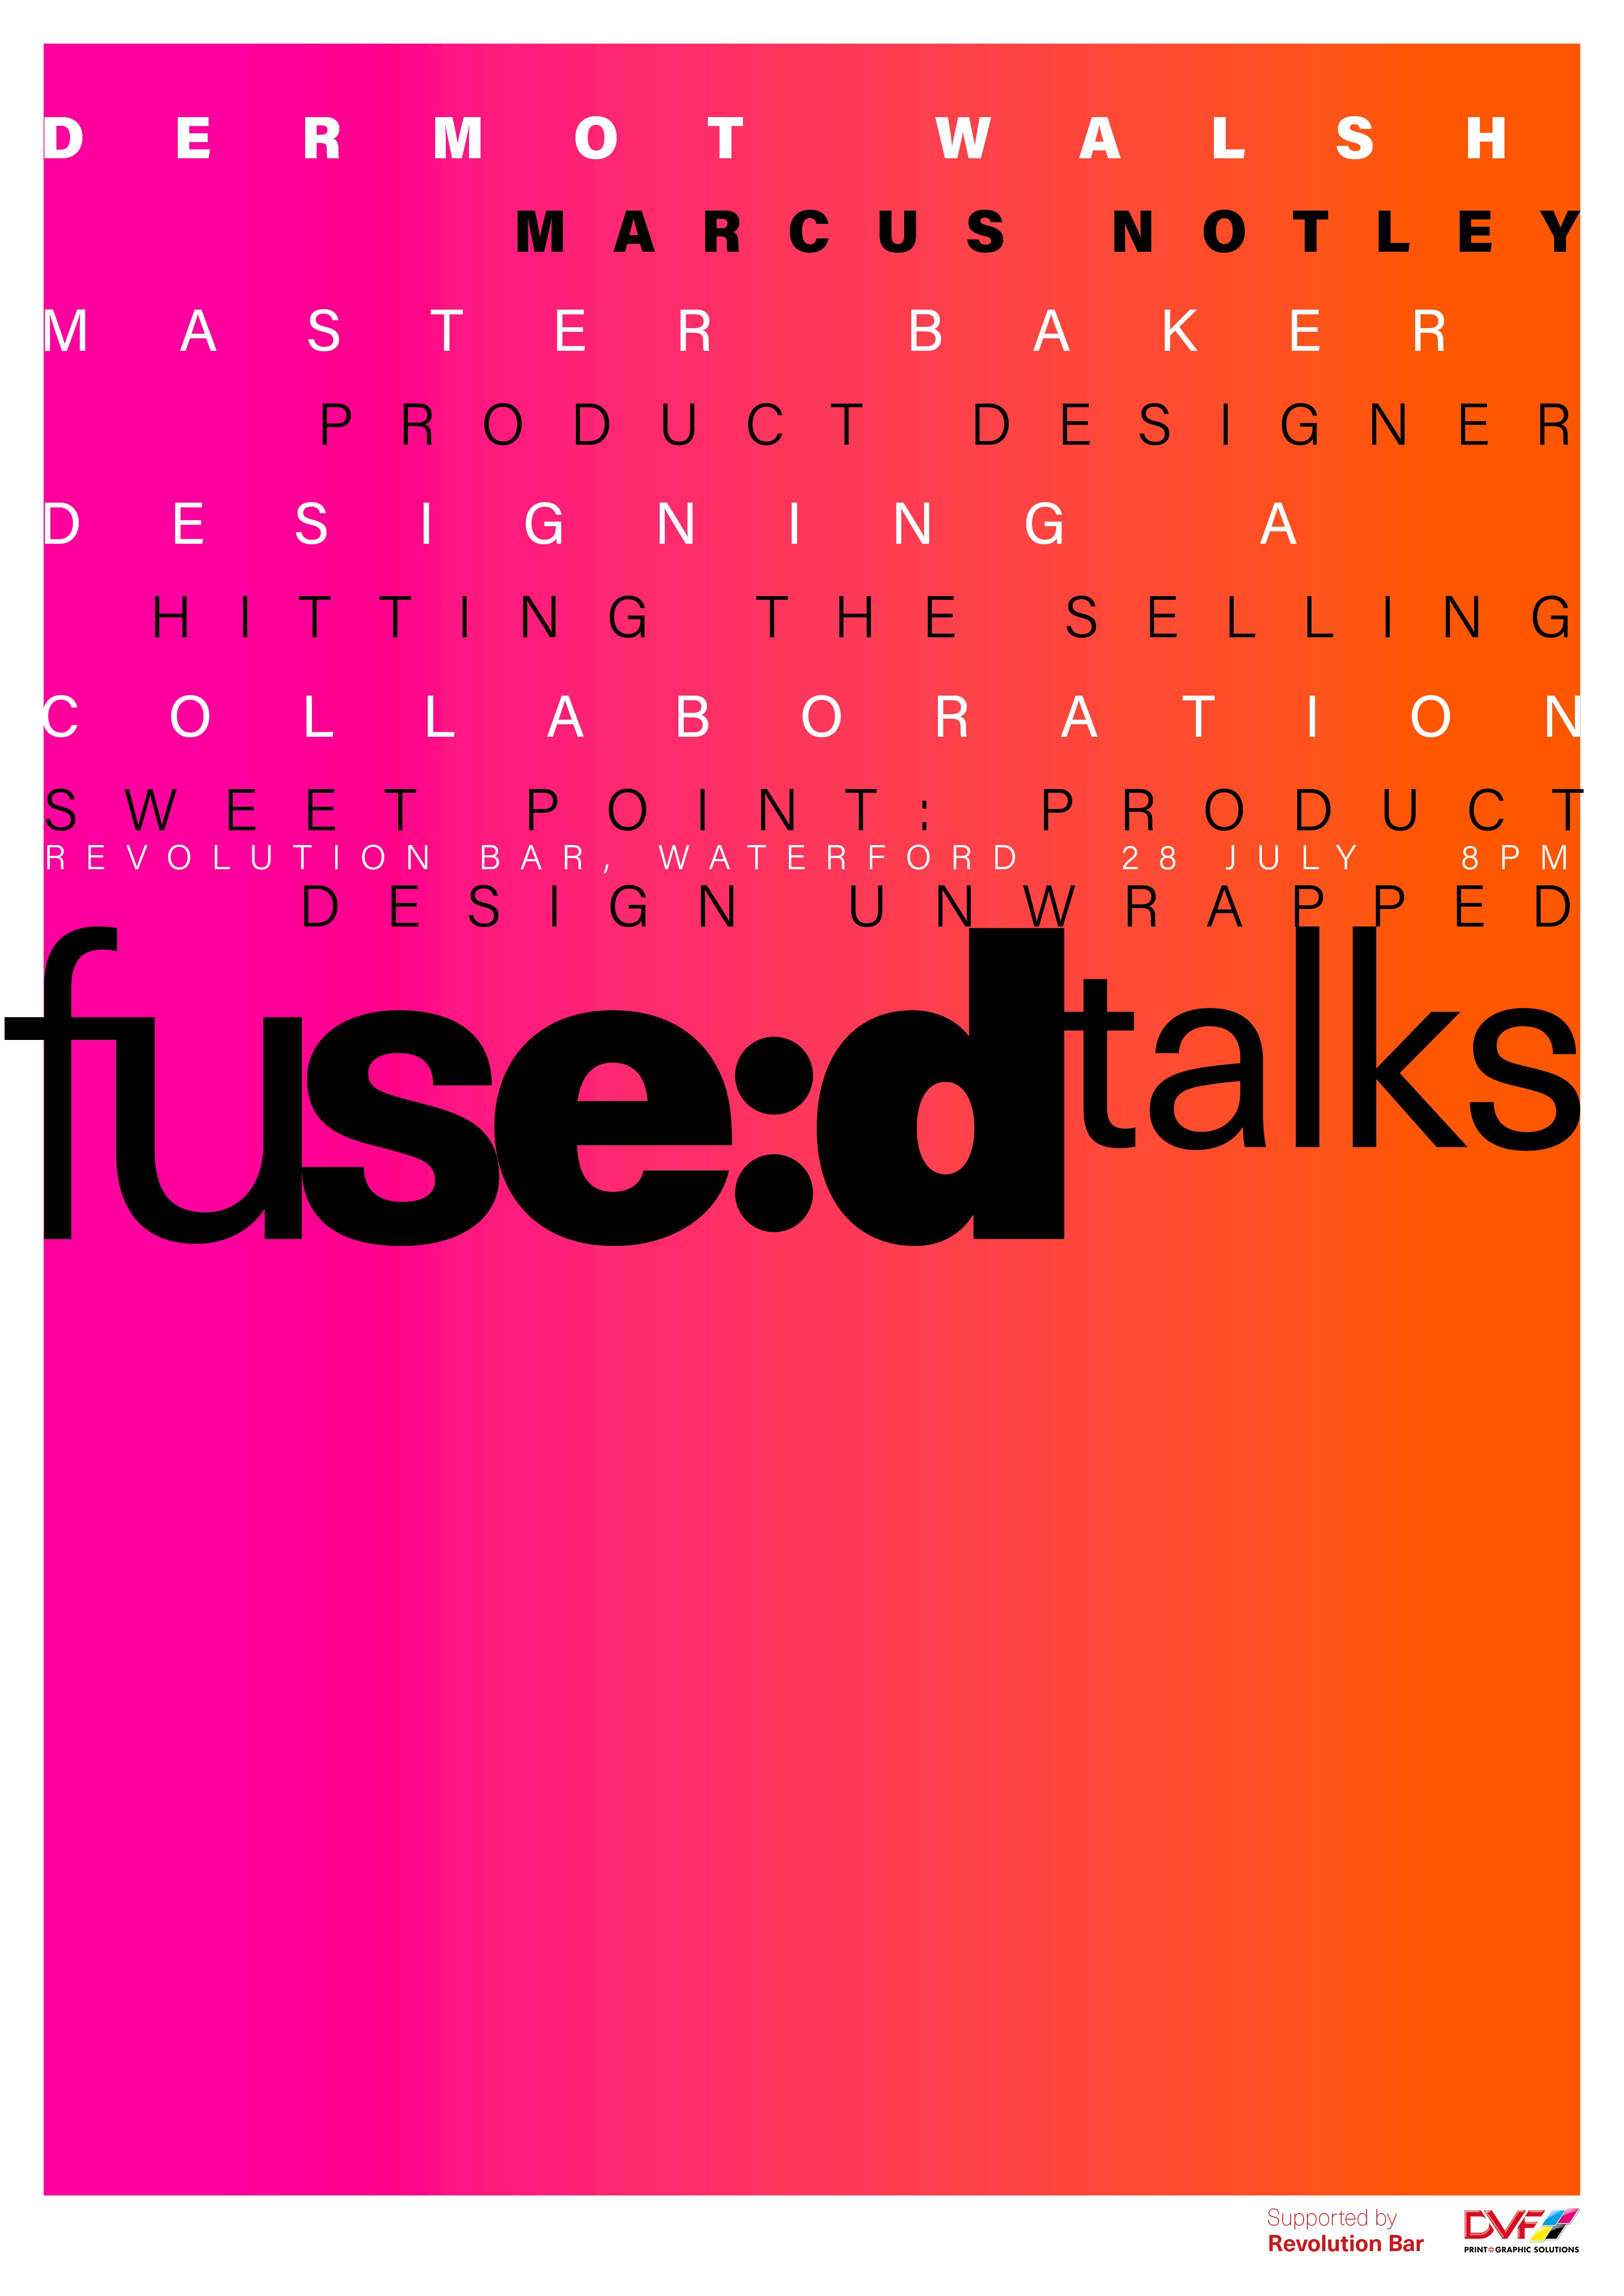 Cover image: fuse:d talks / fuse:d films